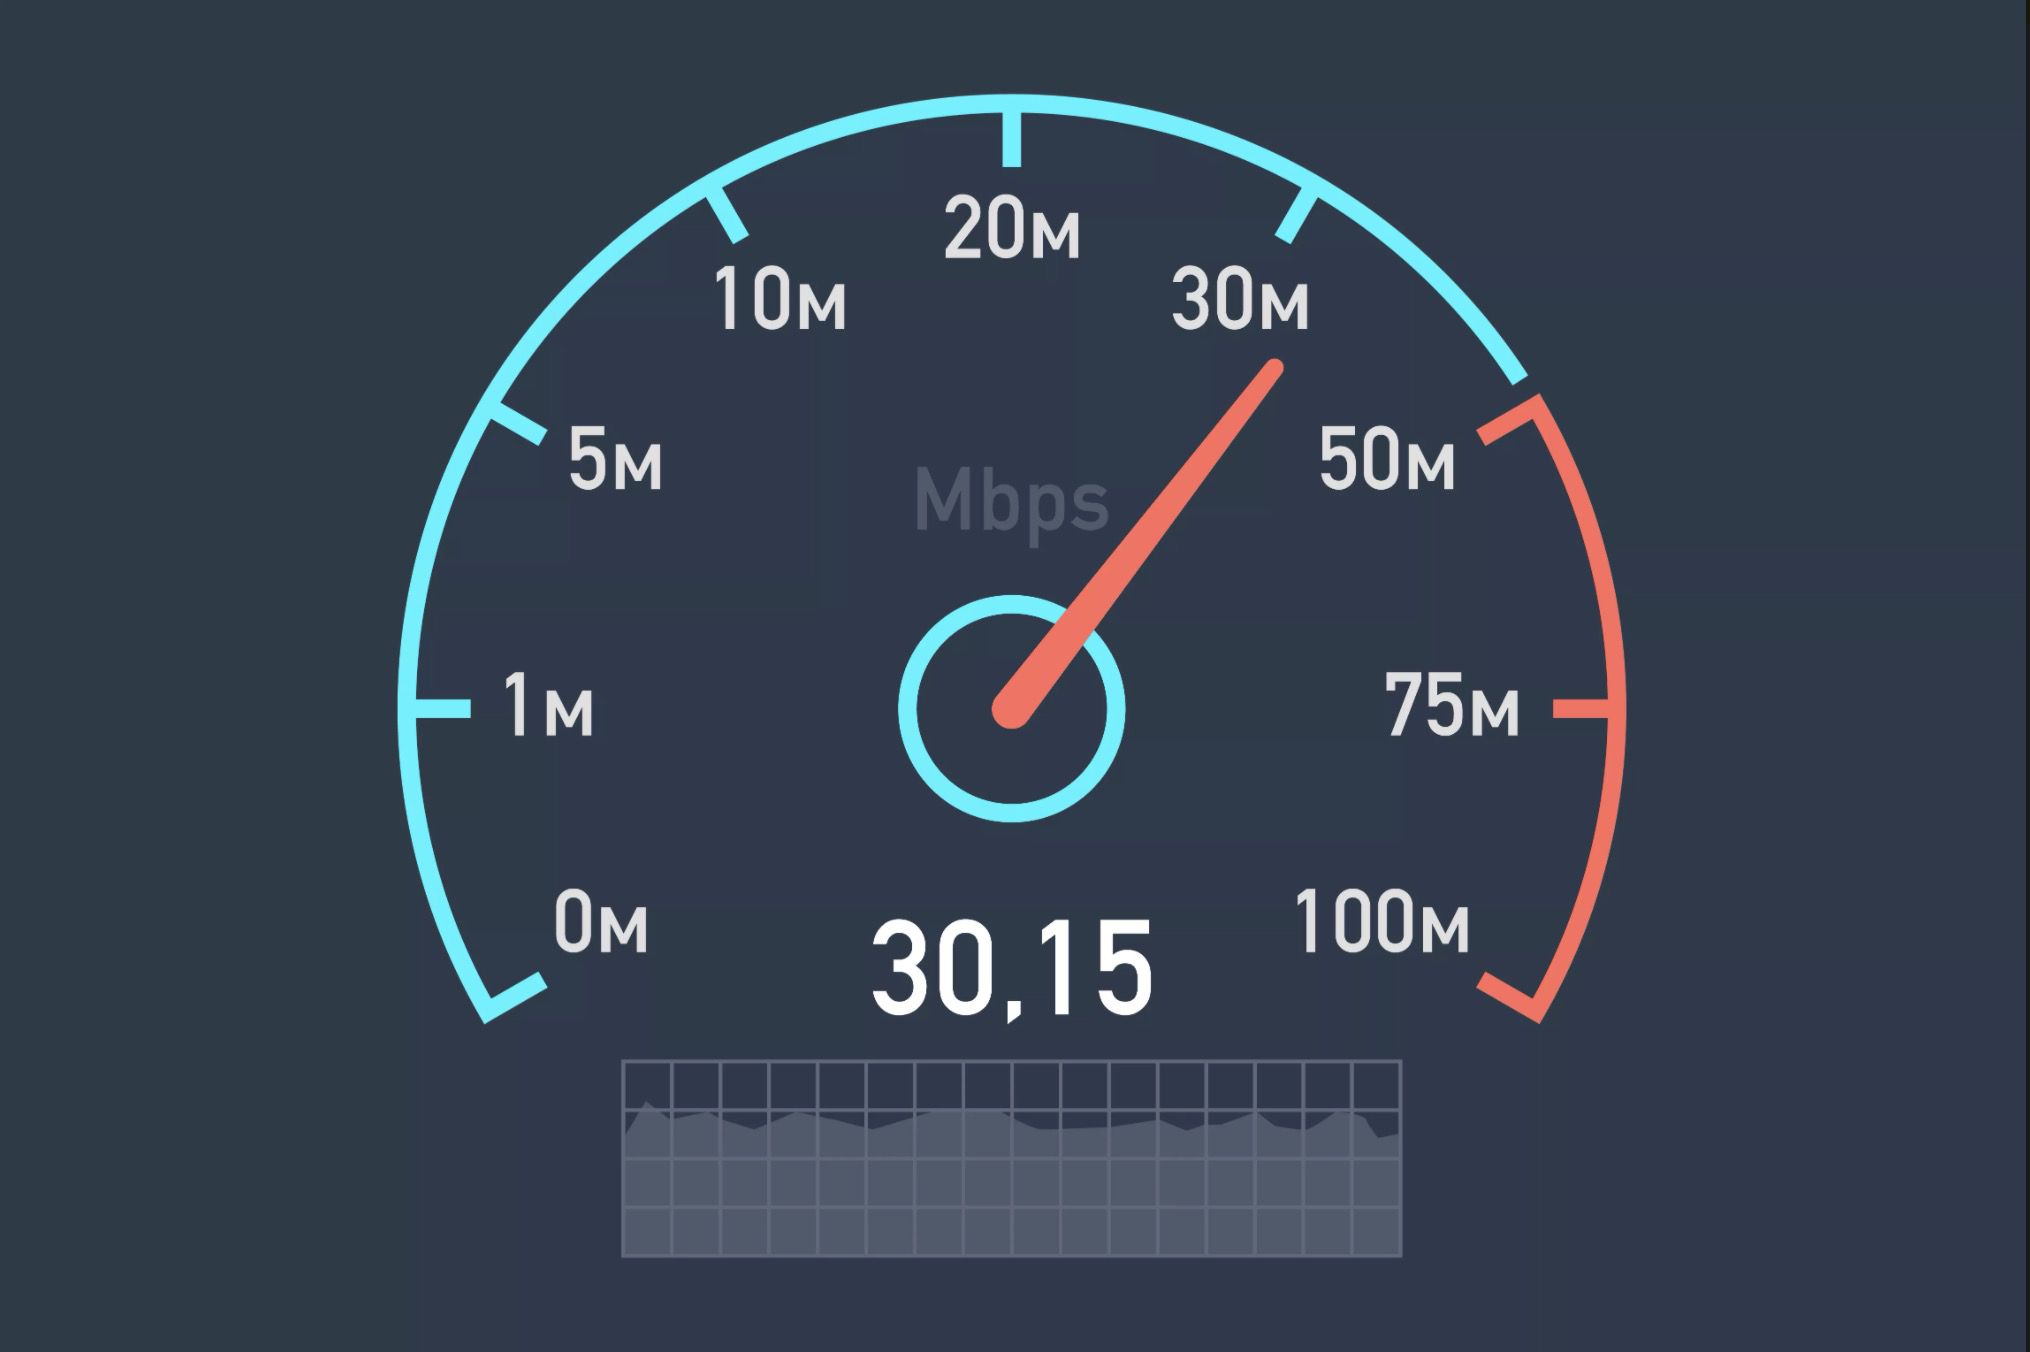 Otestujte si svoji rychlost internetu